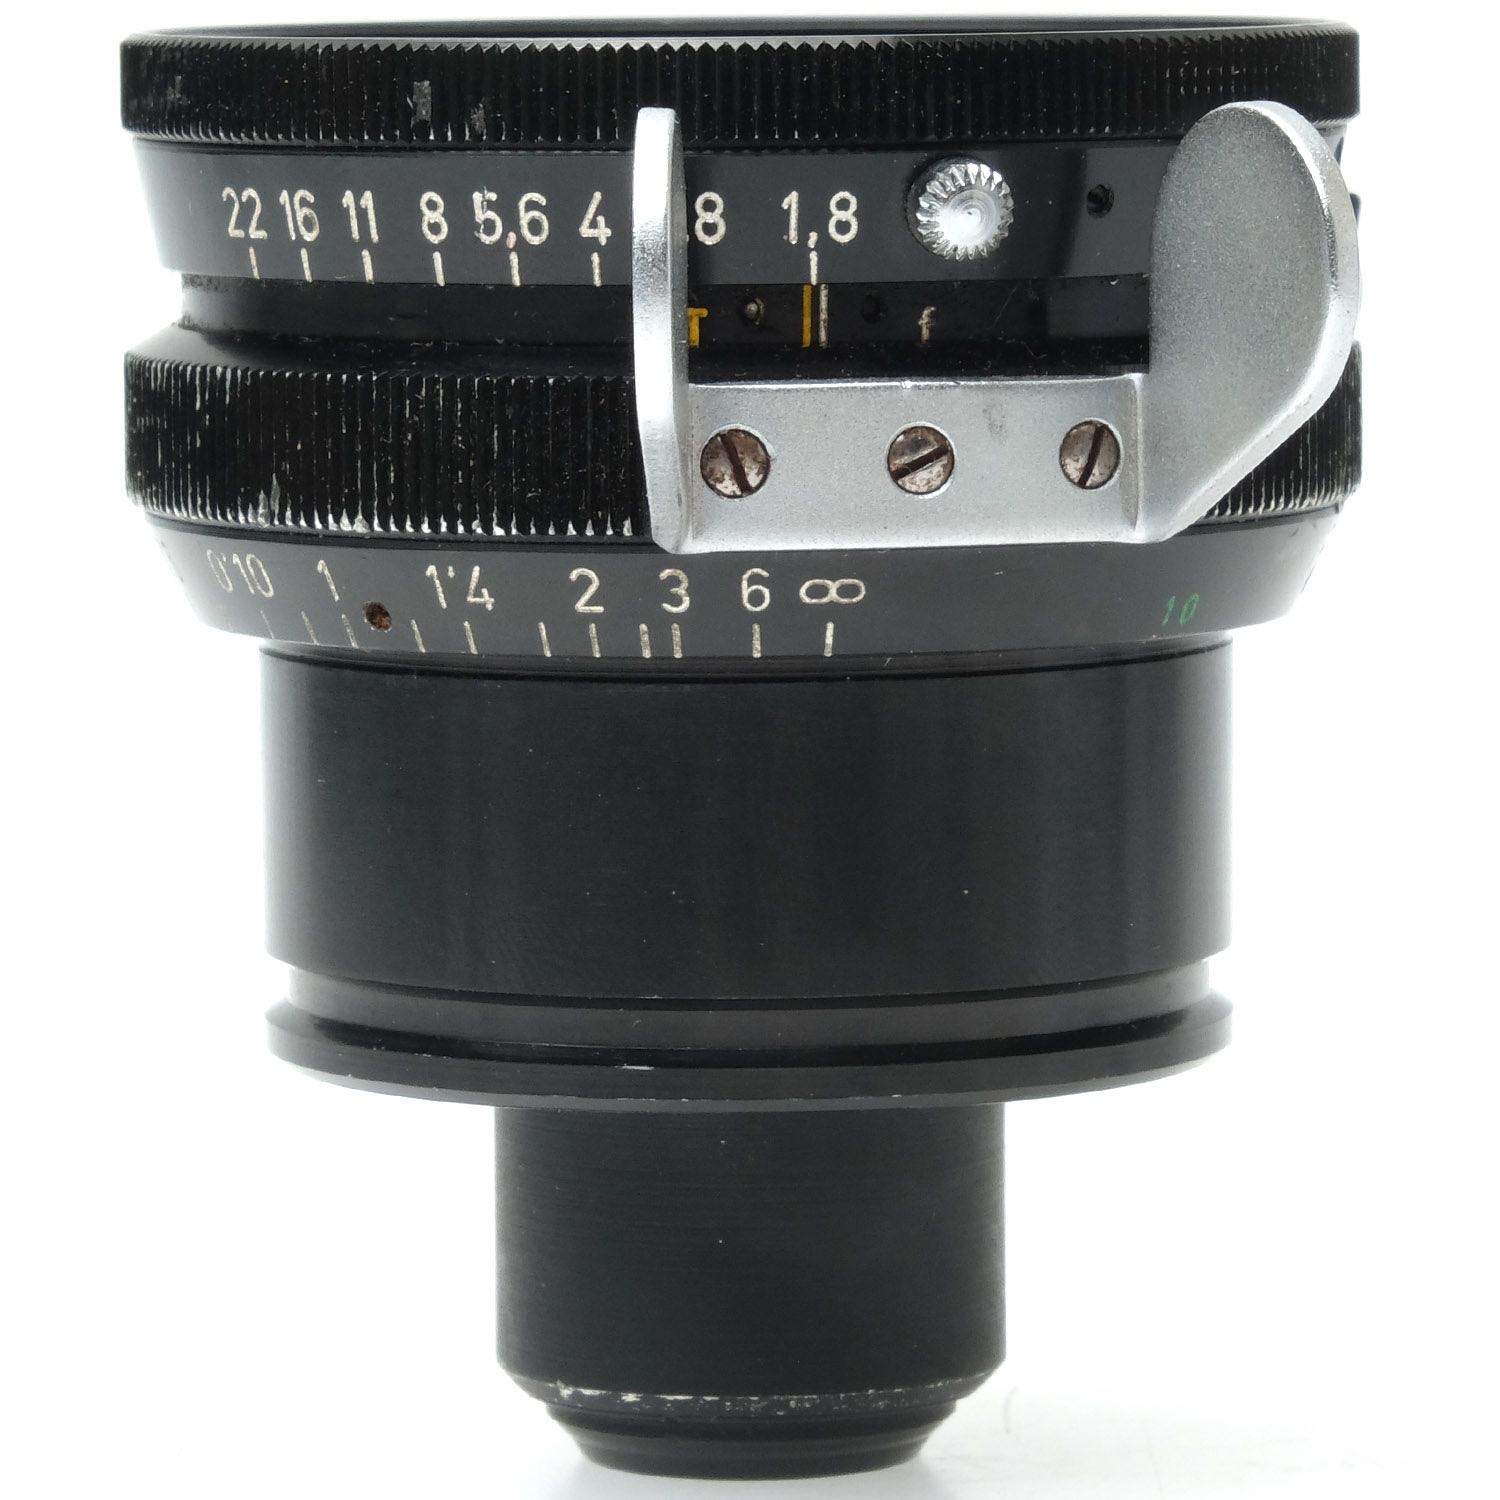 Schneider アリフレックス cinegon 10mm f1.8 ジャンク - レンズ(単焦点)